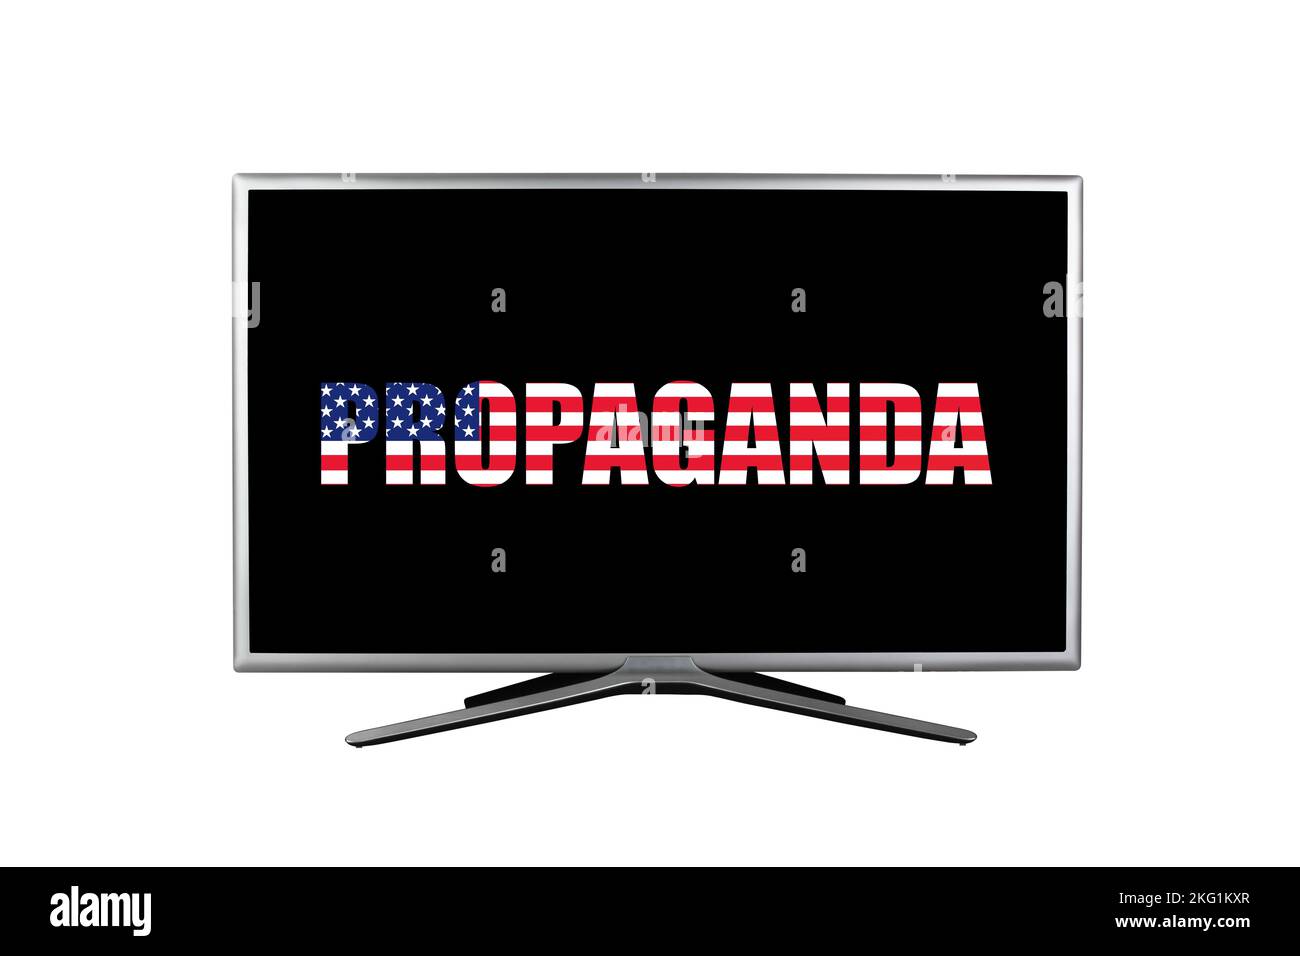 L'inscription propagande dans les couleurs du drapeau américain sur un écran de télévision noir isolé sur un fond blanc Banque D'Images